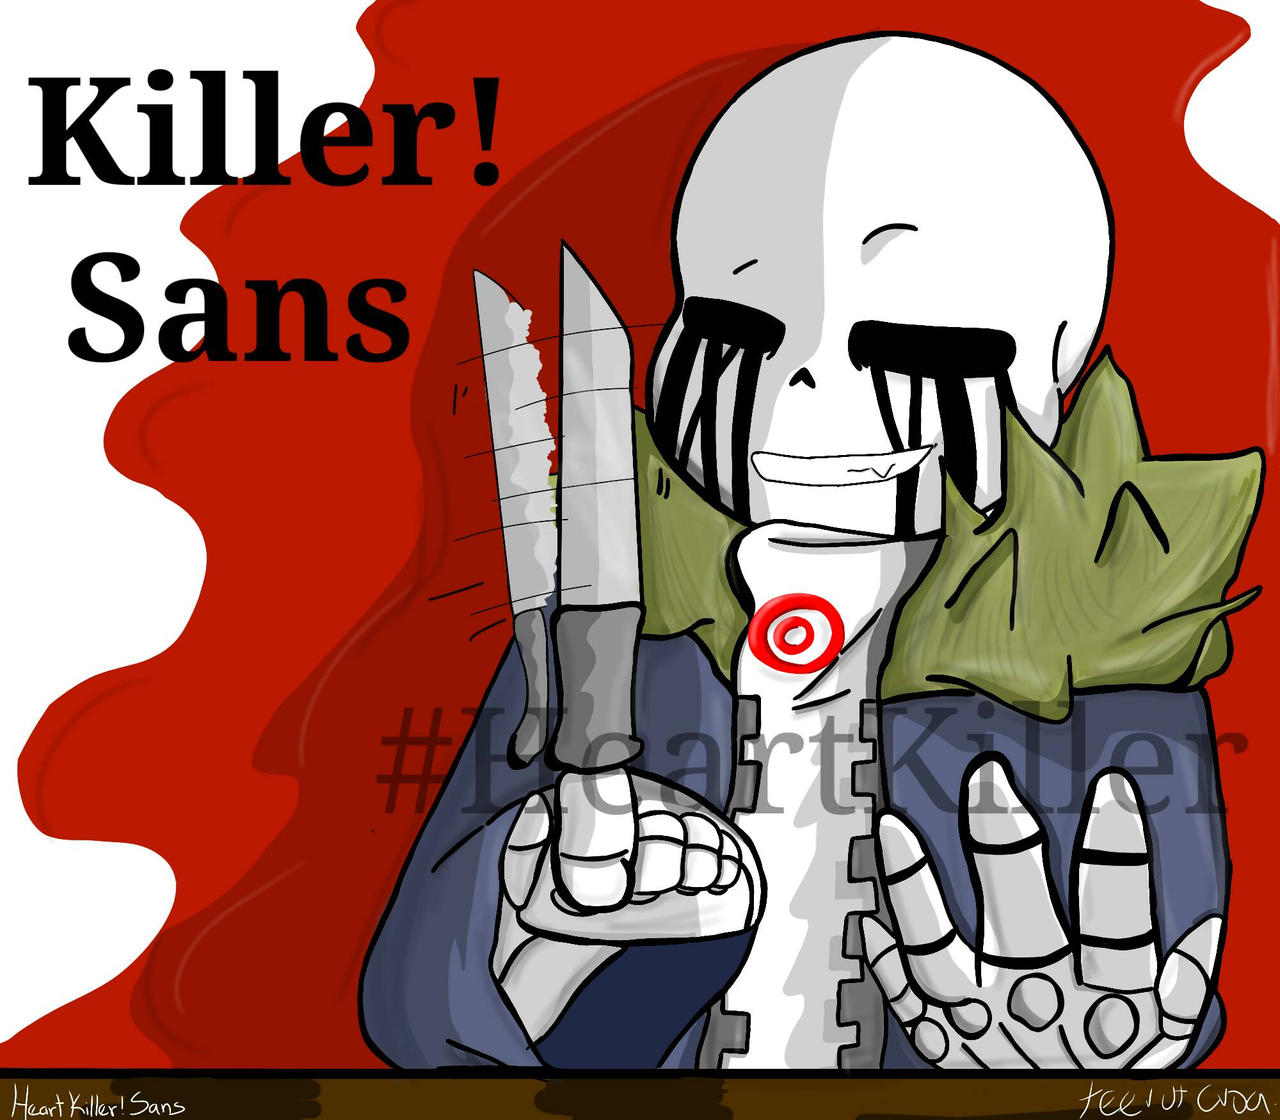 Killer sans unlocked (killer sans take redisign) by XxAflredoxX on